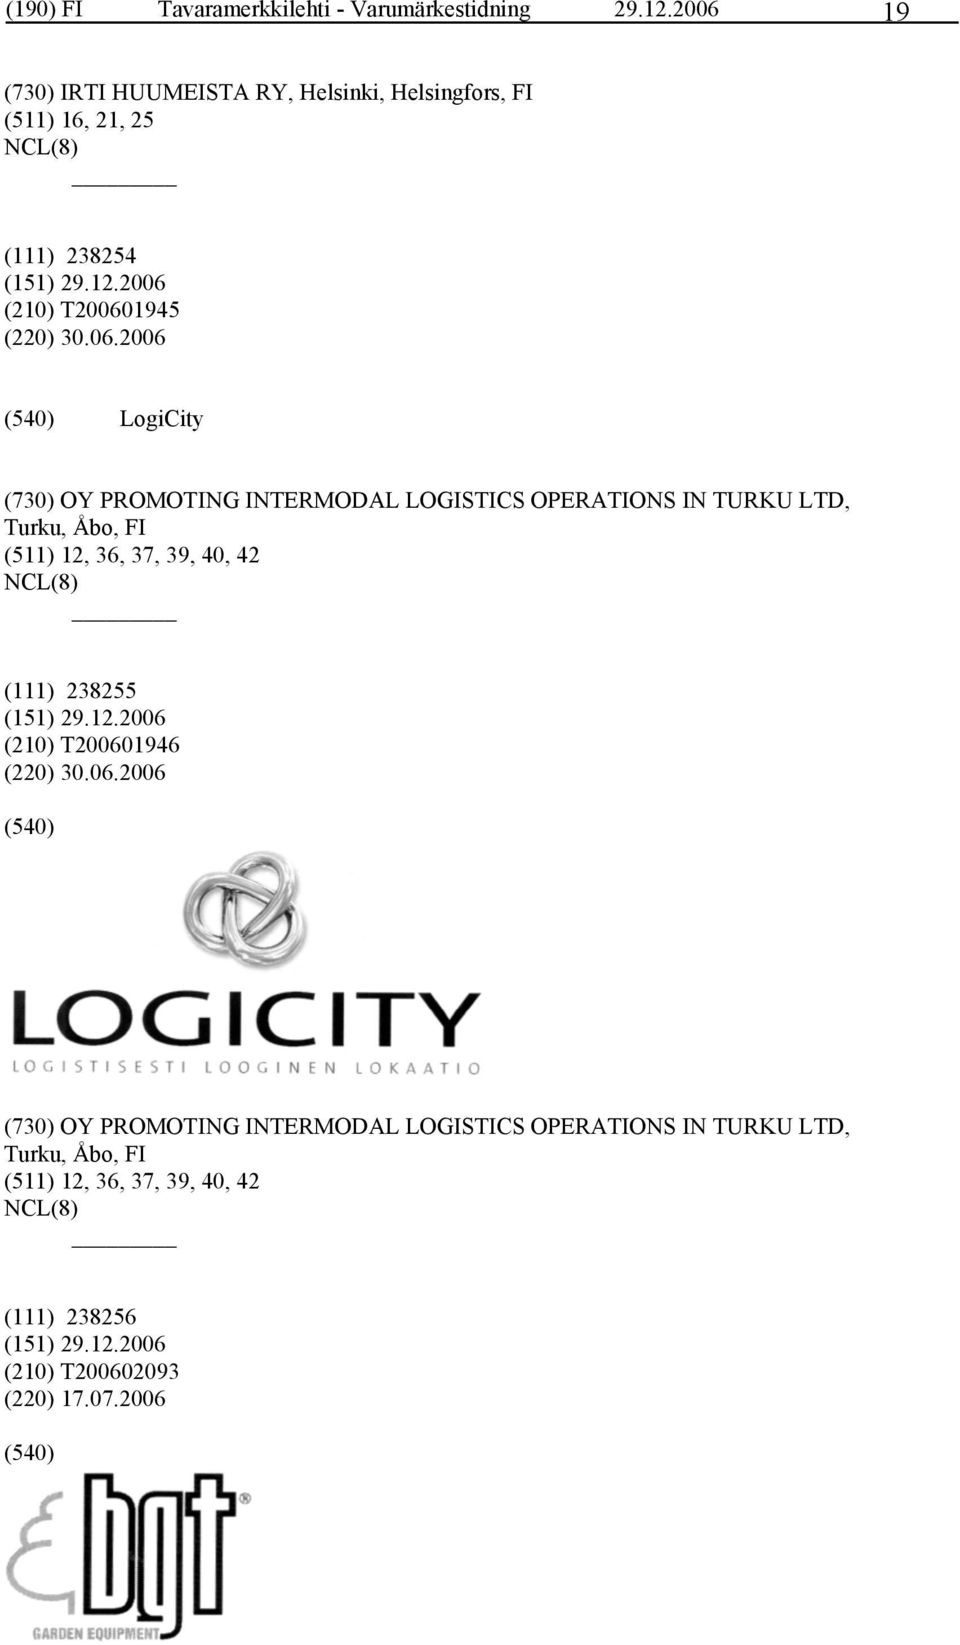 LogiCity (730) OY PROMOTING INTERMODAL LOGISTICS OPERATIONS IN TURKU LTD, Turku, Åbo, FI (511) 12, 36, 37, 39, 40, 42 (111)